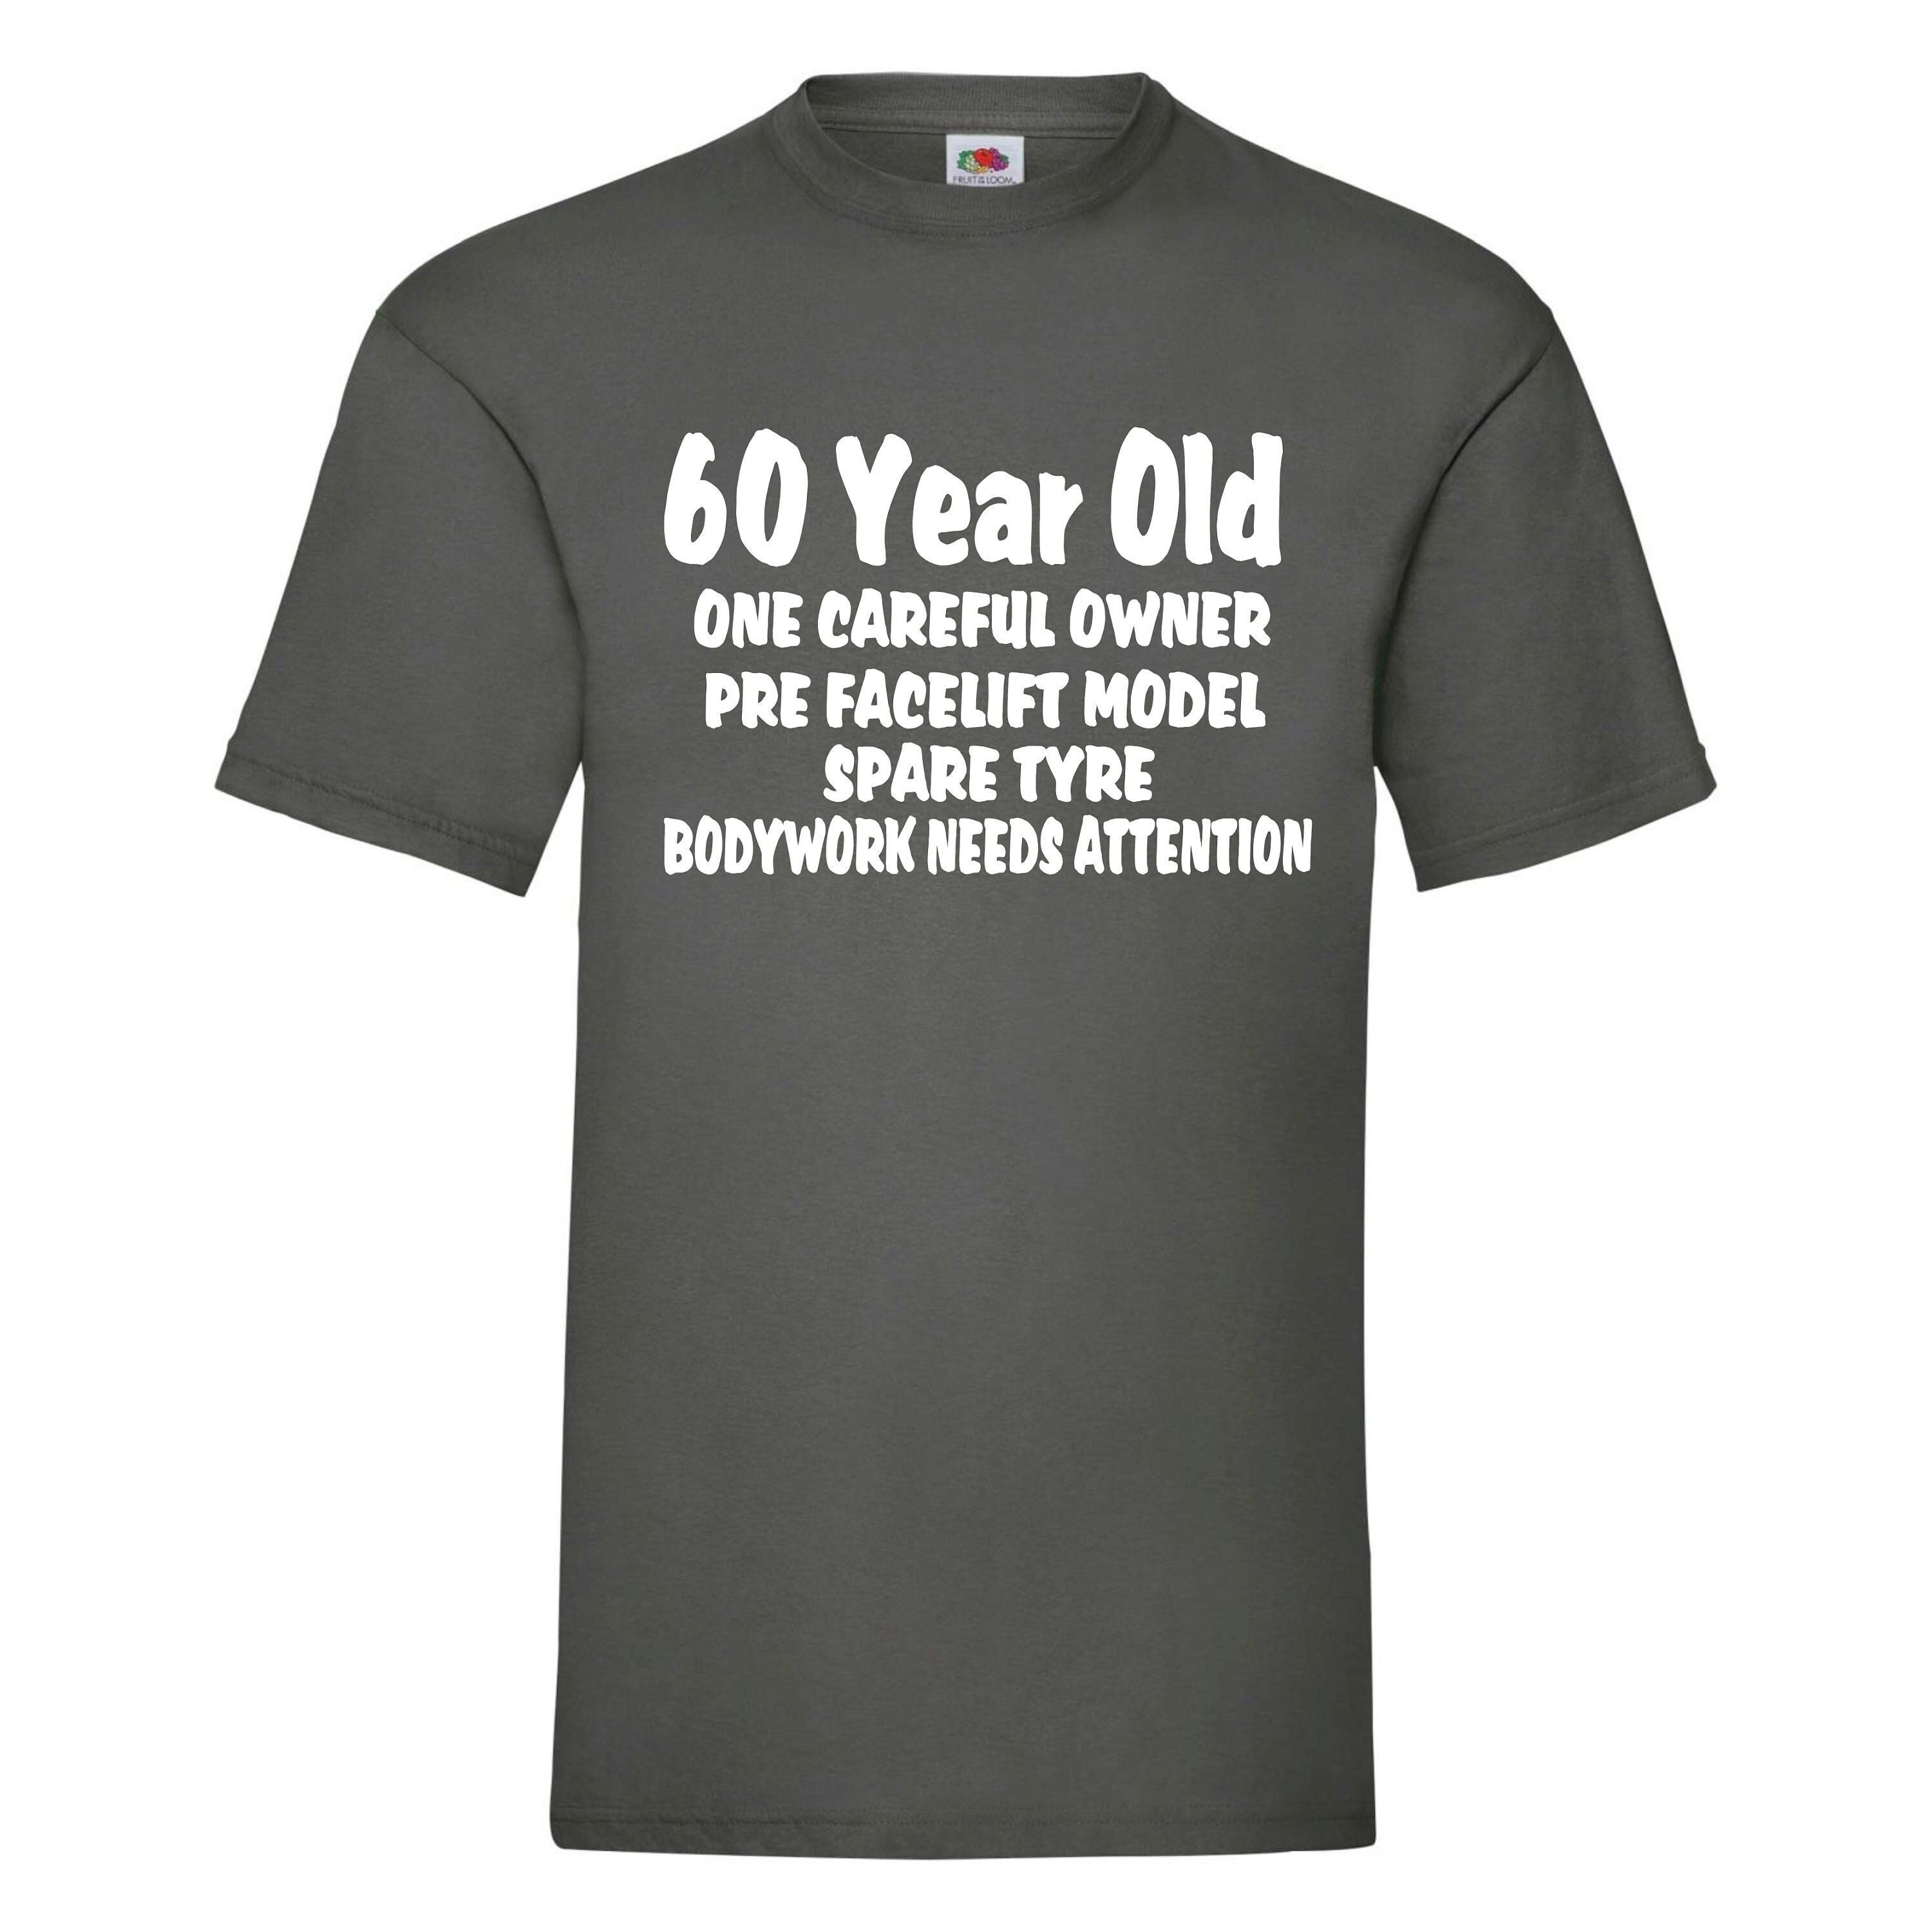 Tshirt Compleanno 60 Anni Donna Estate Mi ci sono Voluti 60 Anni - Idea  Regalo Maglietta Divertente - ColorFamily